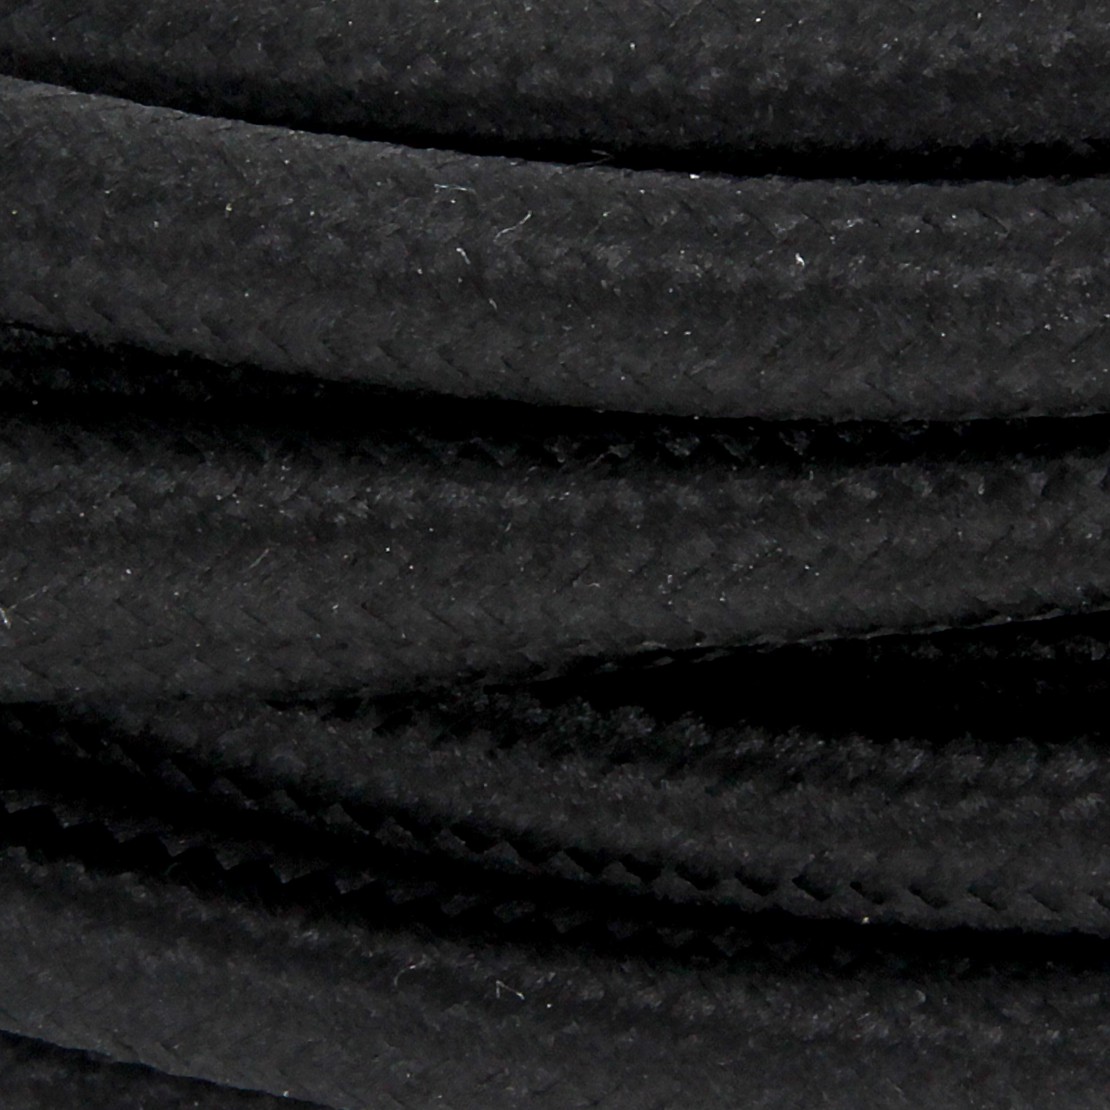 Câble HO3VV-F  2 x 0,75mm2 - 5 m - textile noir  